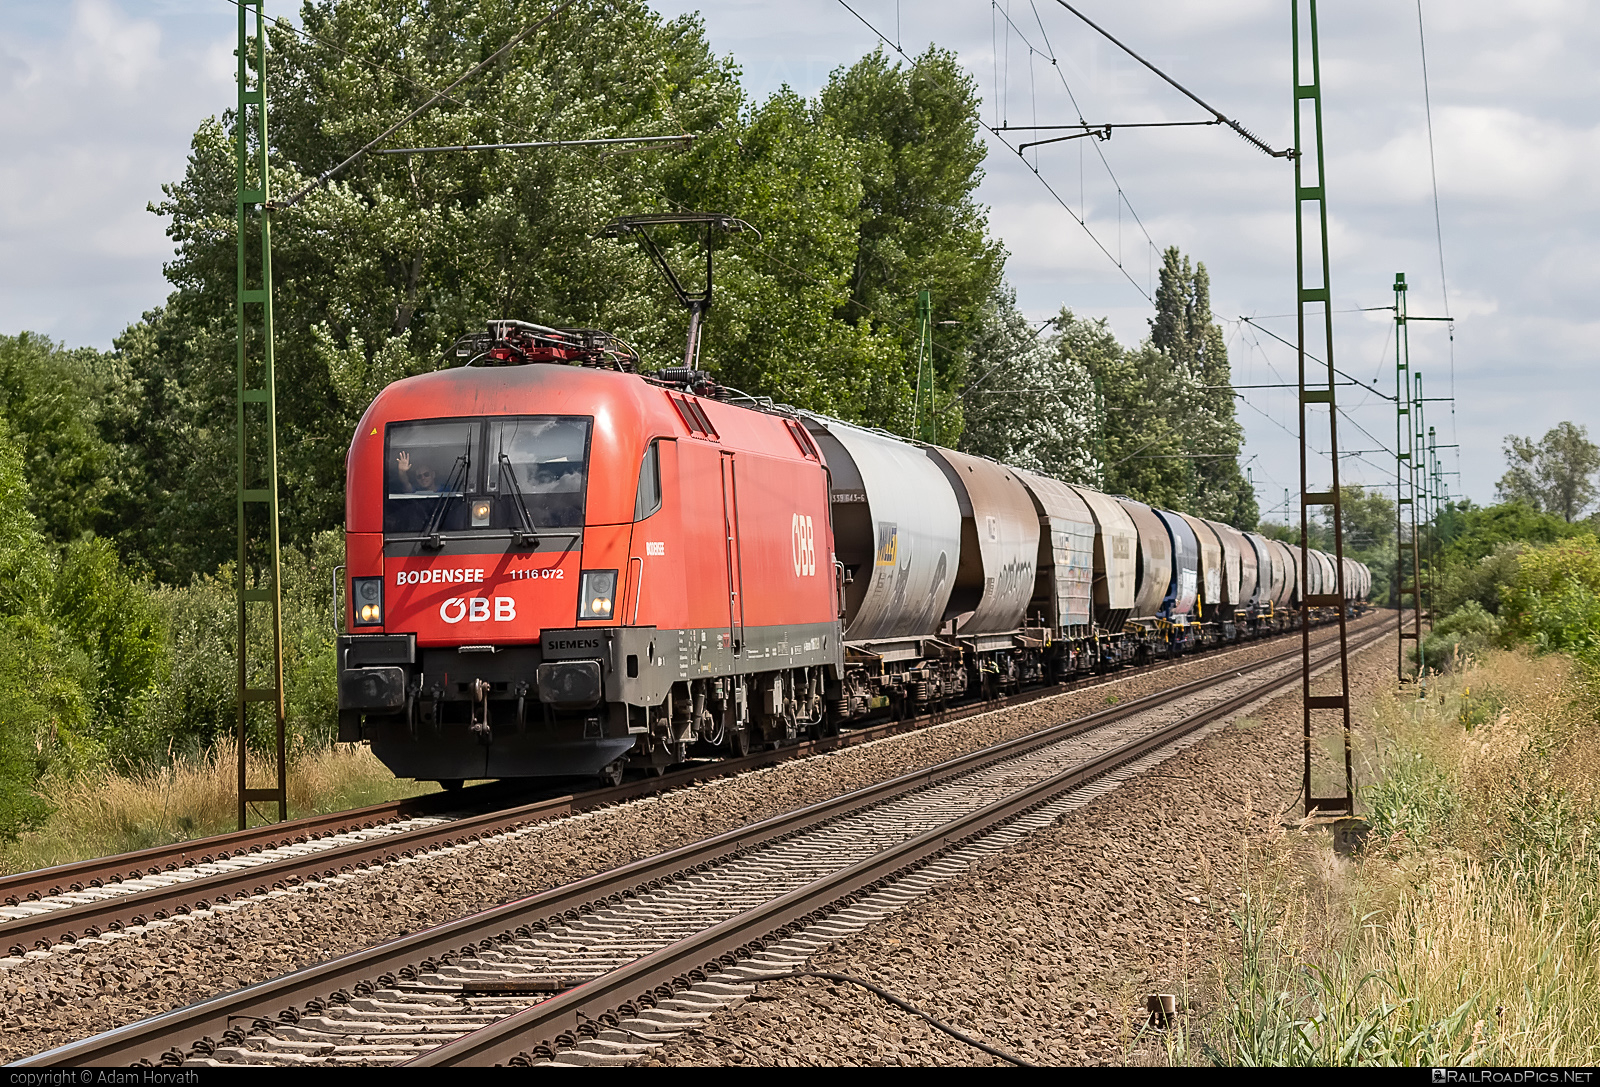 Siemens ES 64 U2 - 1116 072 operated by Rail Cargo Austria AG #es64 #es64u2 #eurosprinter #greetings #hopperwagon #millet #obb #osterreichischebundesbahnen #rcw #siemens #siemensEs64 #siemensEs64u2 #siemenstaurus #taurus #tauruslocomotive #transcereales